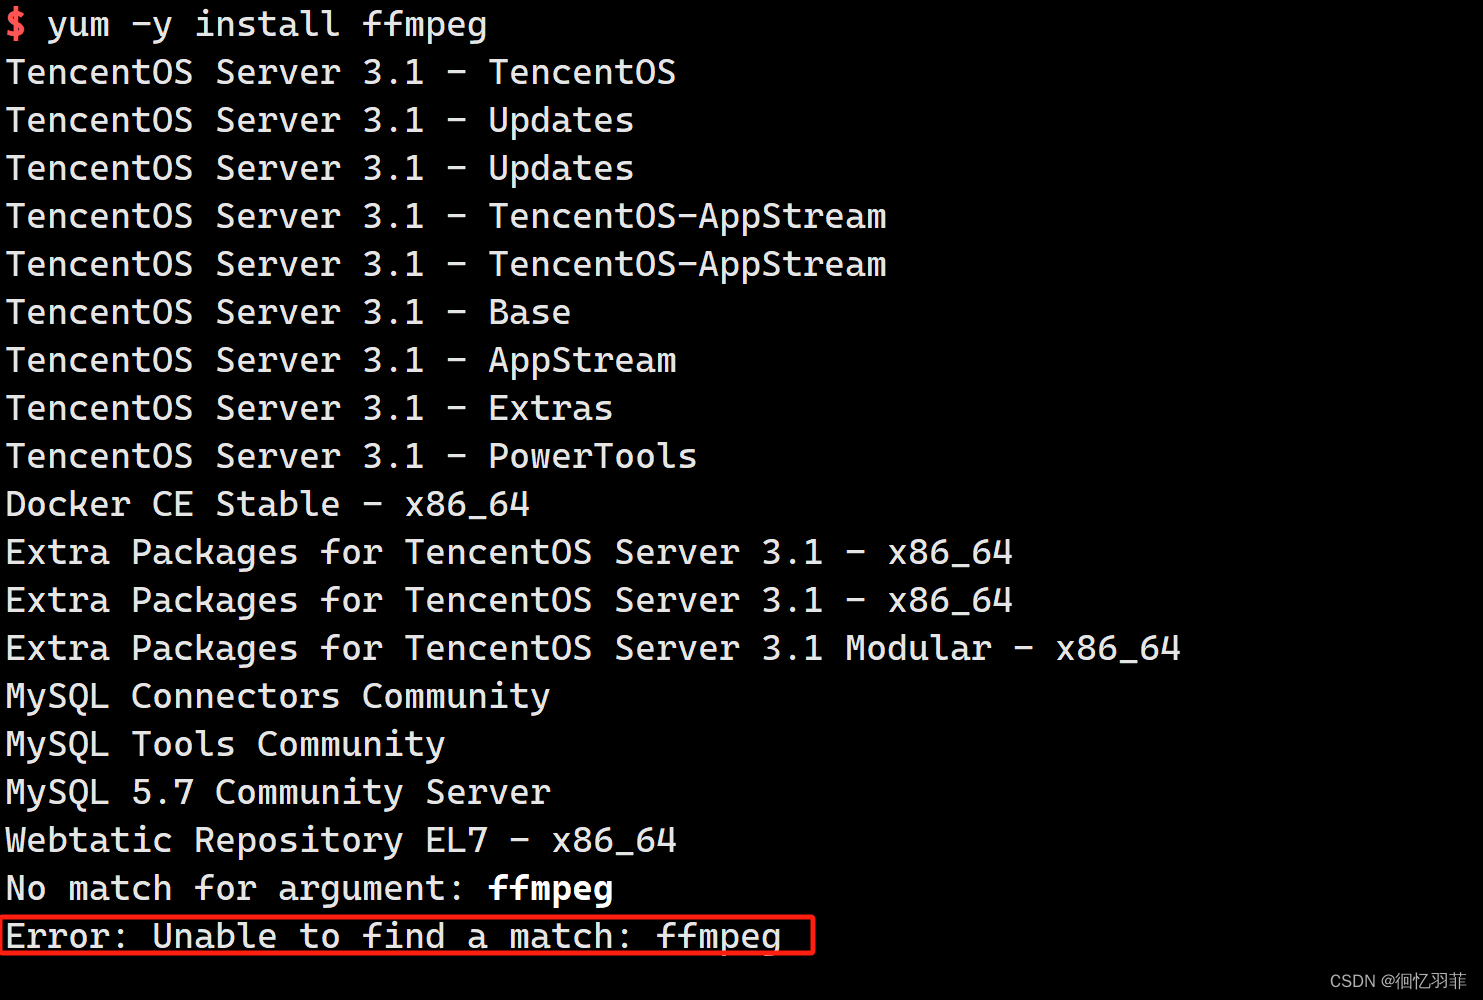 学习使用三个命令实现在腾讯云服务器TencentOS Server 3.1或者CentOS 8上安装ffmpeg